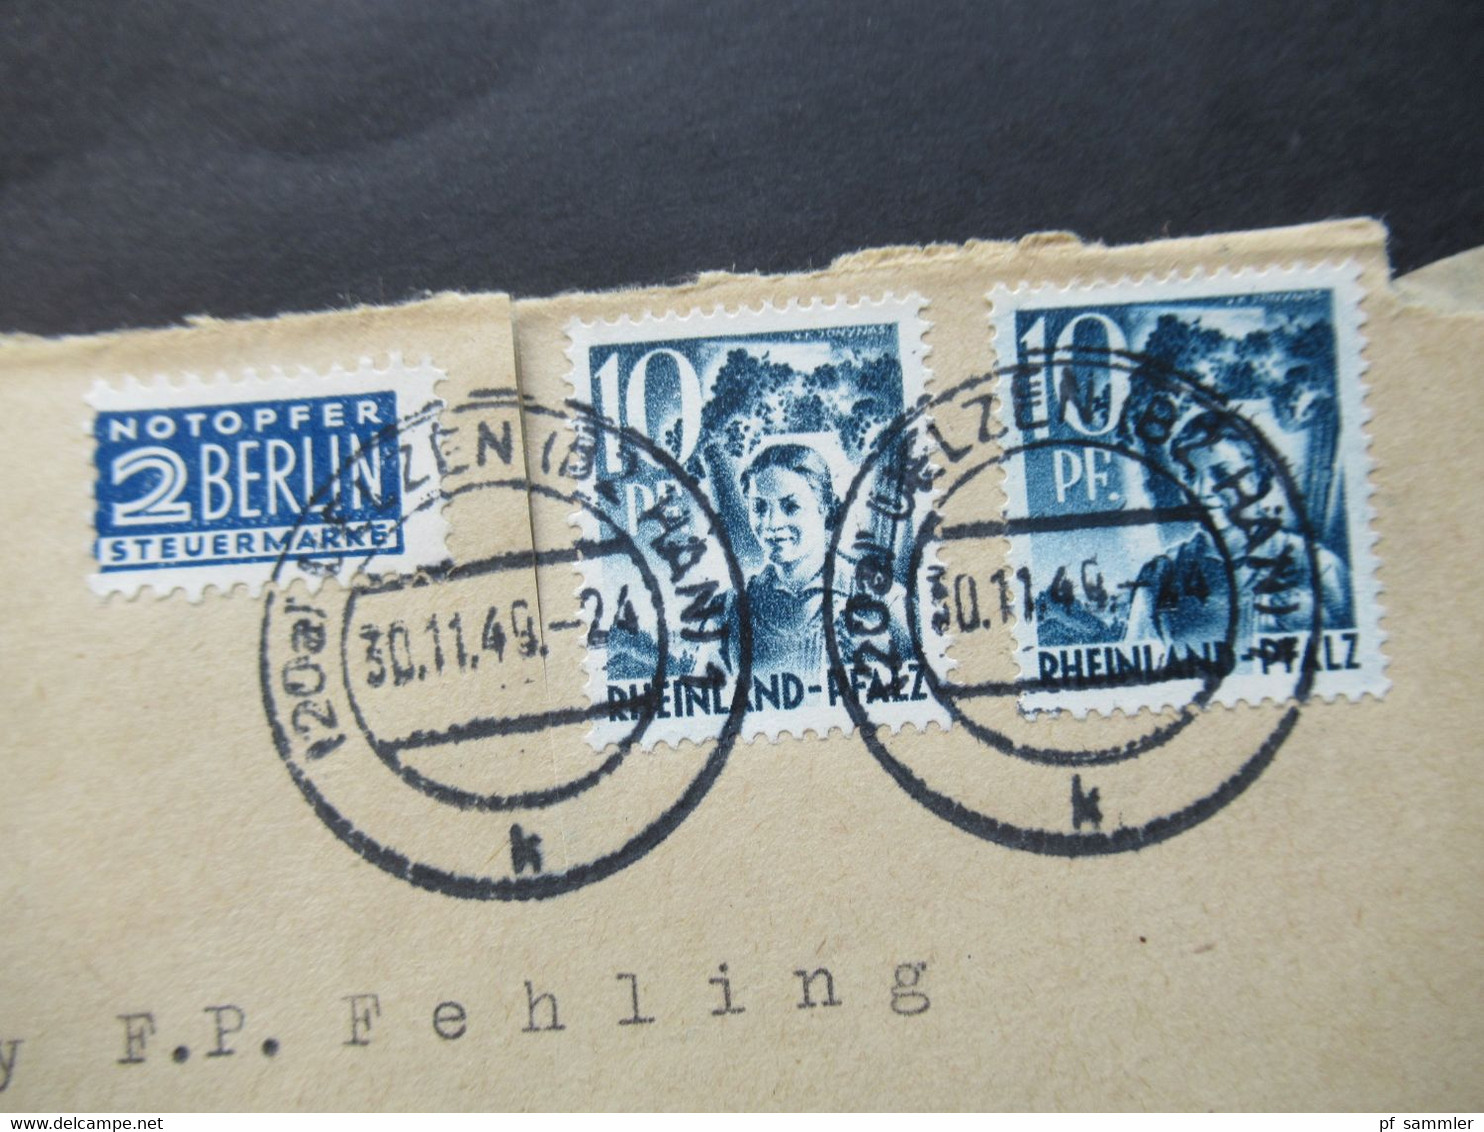 Französische Zone Rheinland Pfalz Nr.3 MeF  30.11.1949 Mit Notopfer Marke Umschlag Saatgut Heinr. Gerke Uelzen Hannover - Rijnland-Palts